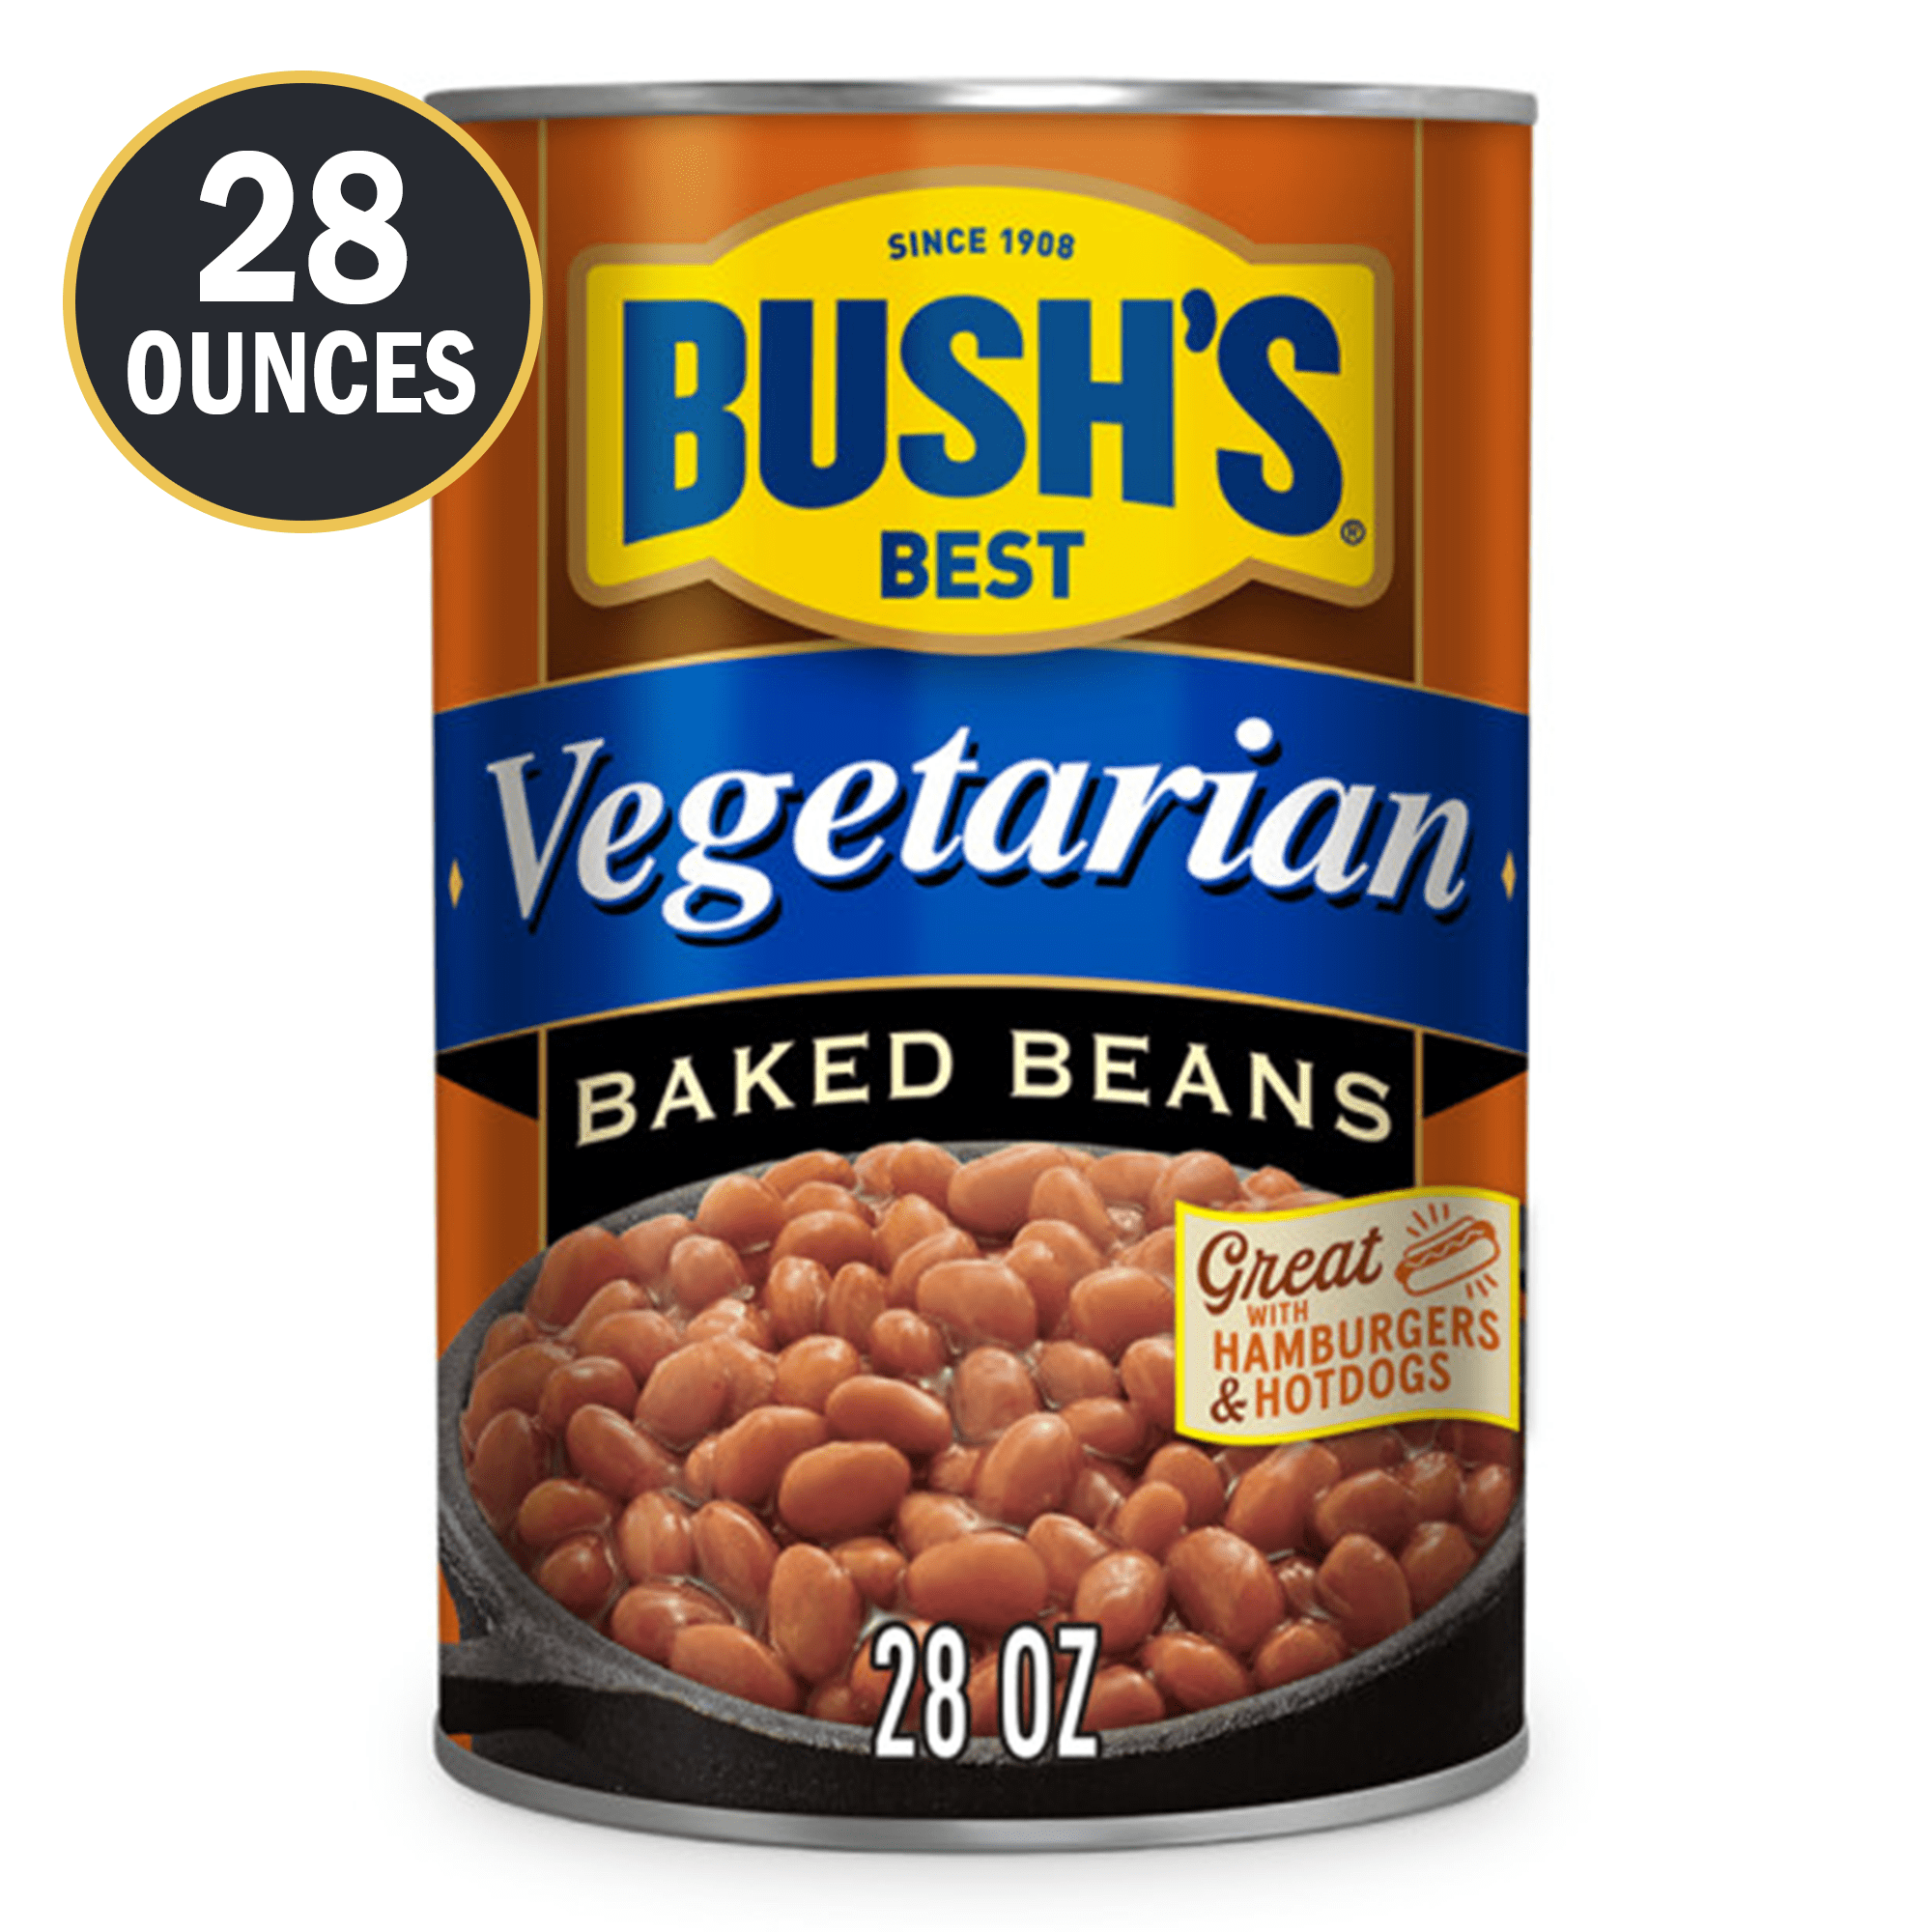 Bush's Vegetarian Baked Beans, Canned Beans, 28 oz